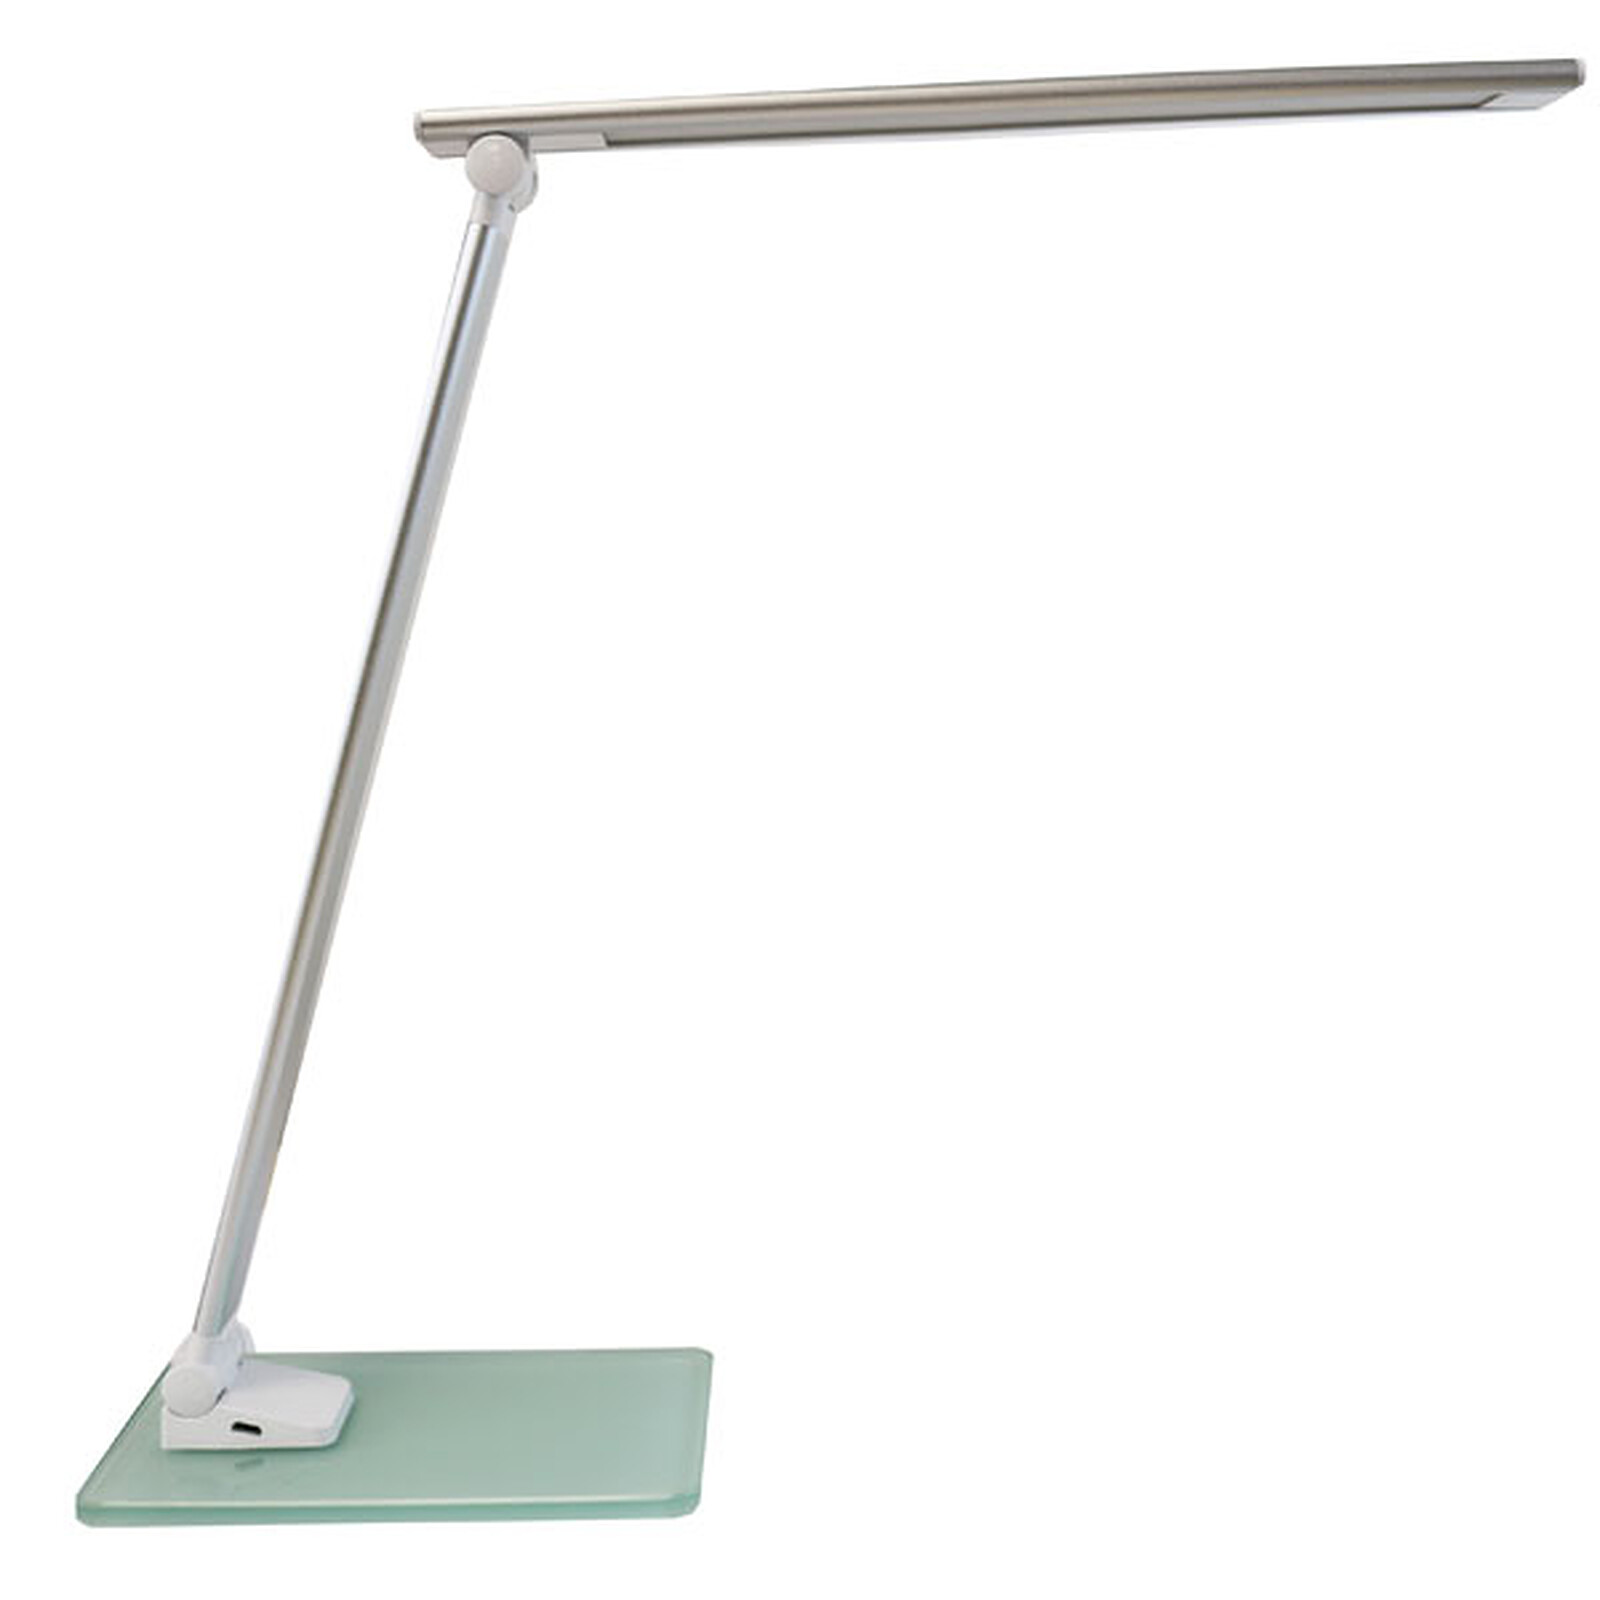 Unilux Popy Desk Lamp On Ldlc, Foldable Led Table Lamp